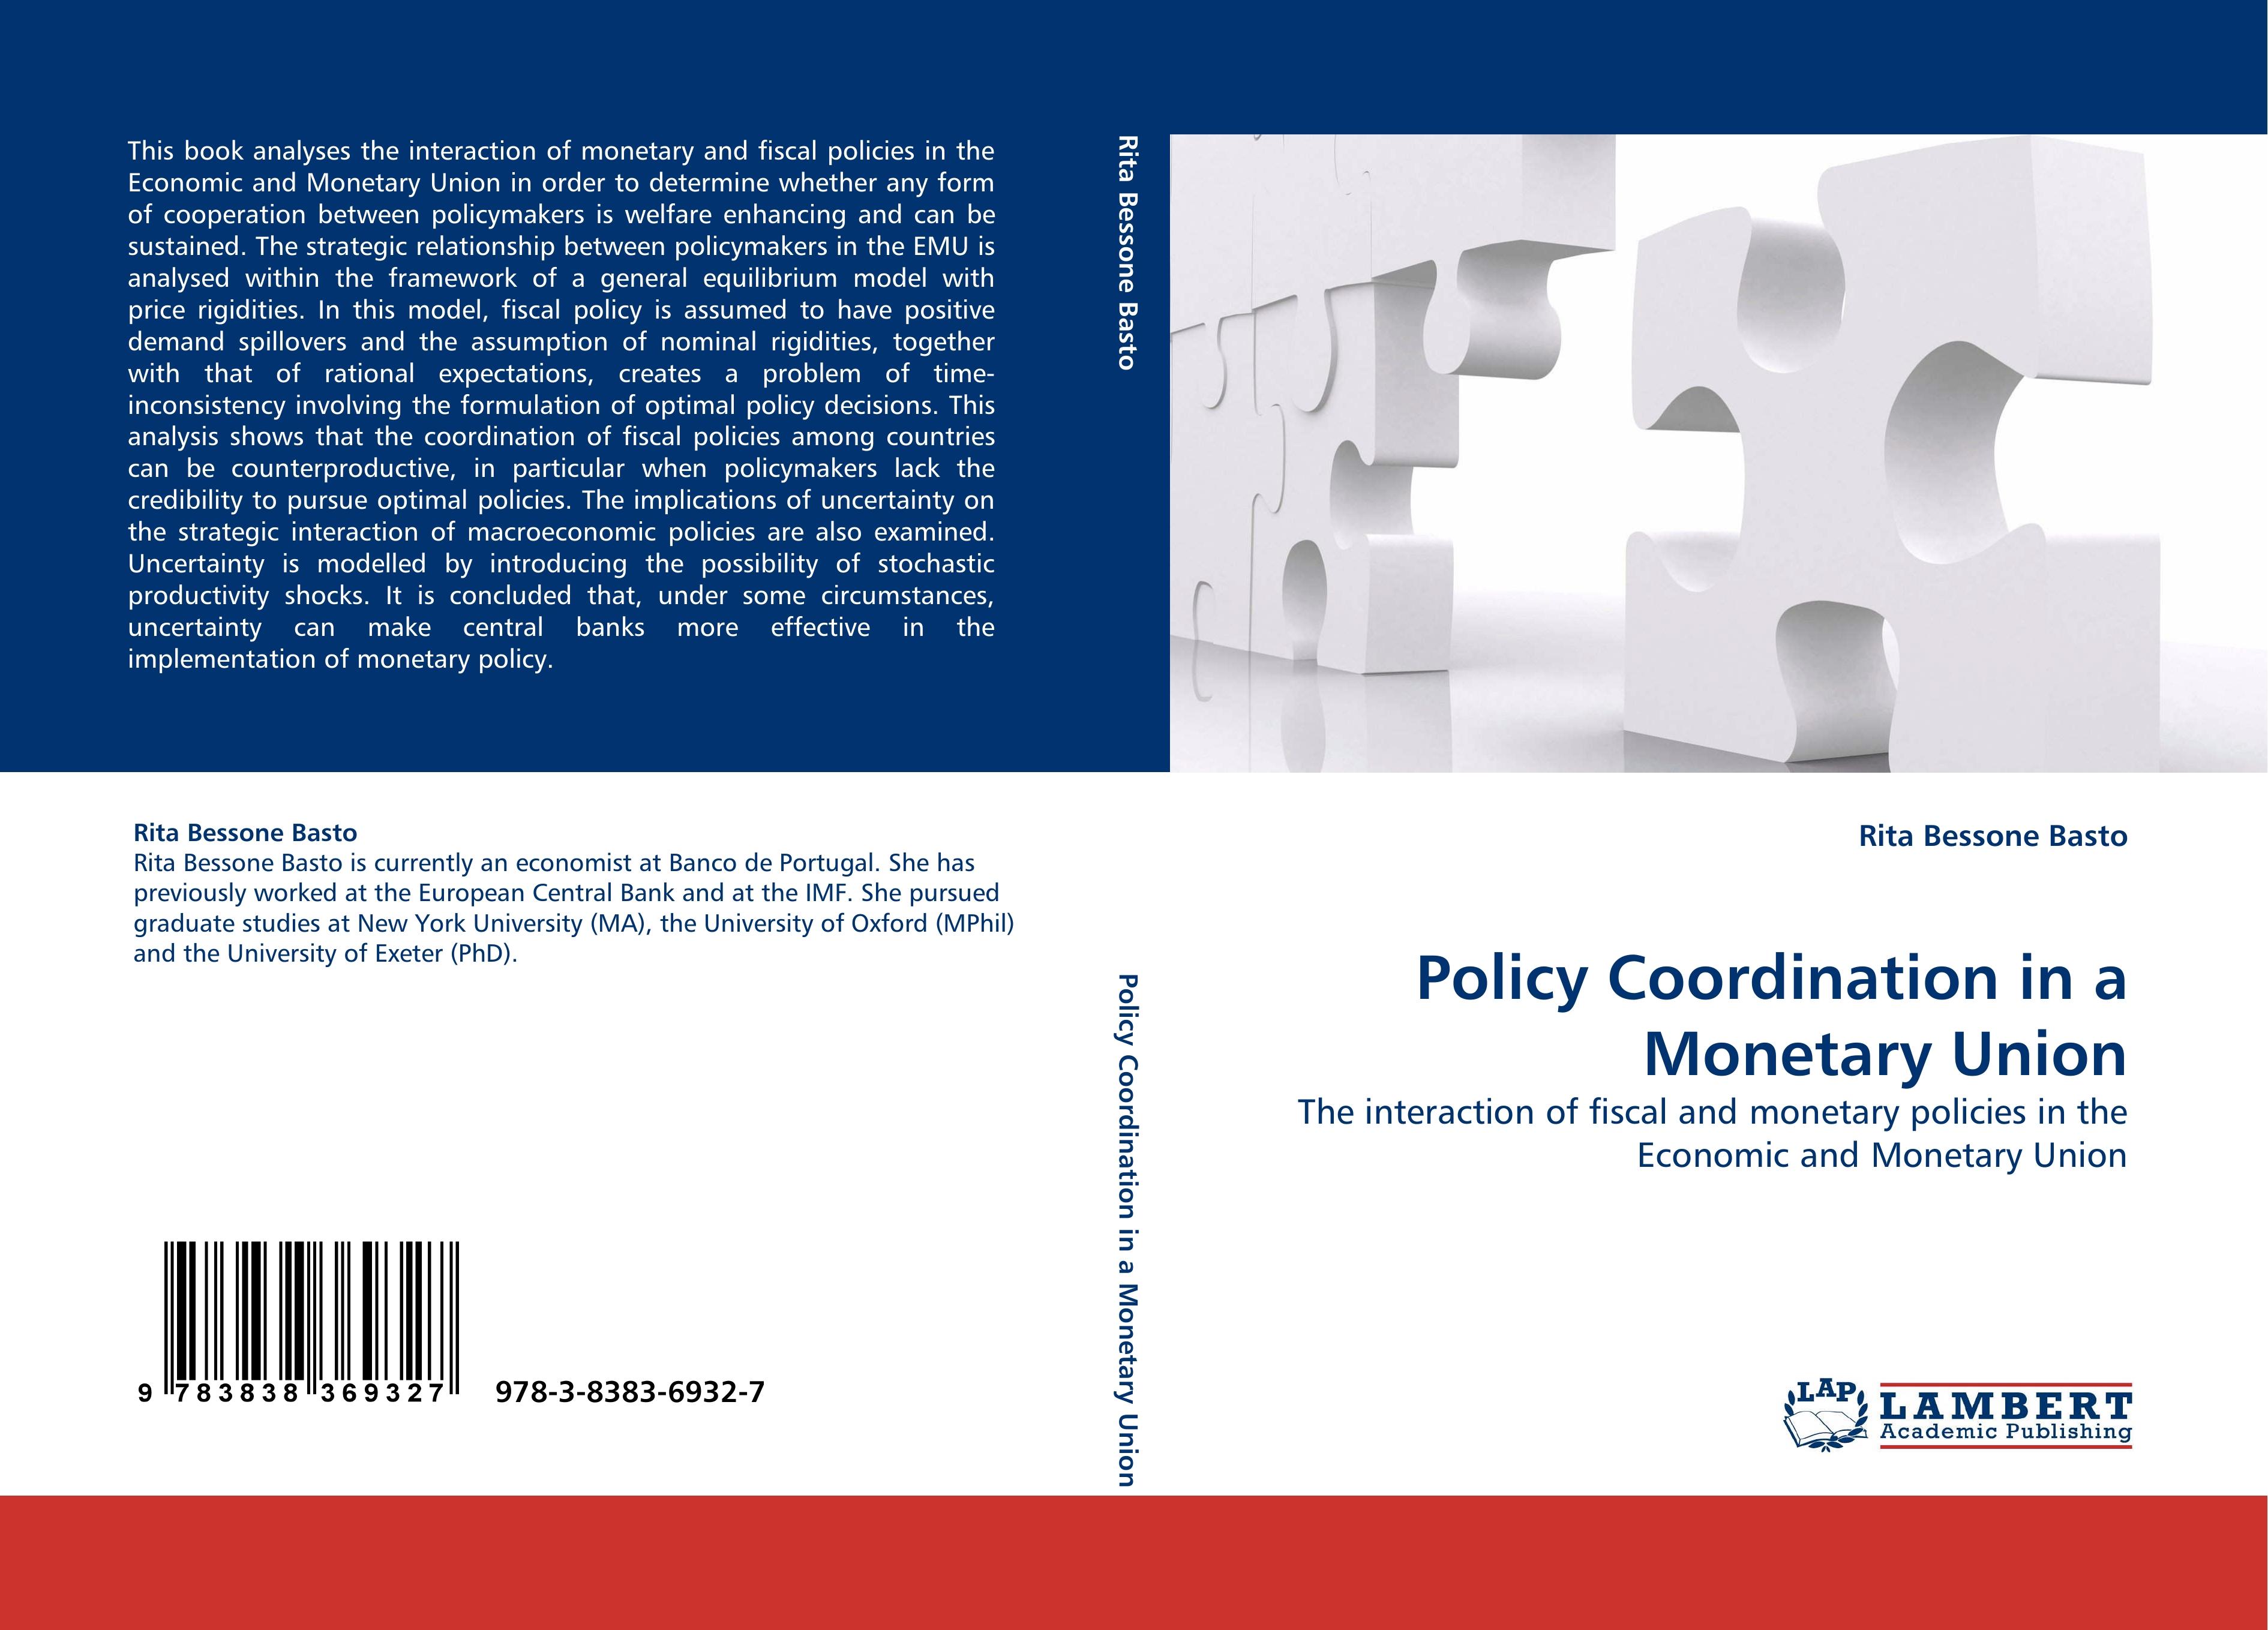 Policy Coordination in a Monetary Union - Rita Bessone Basto